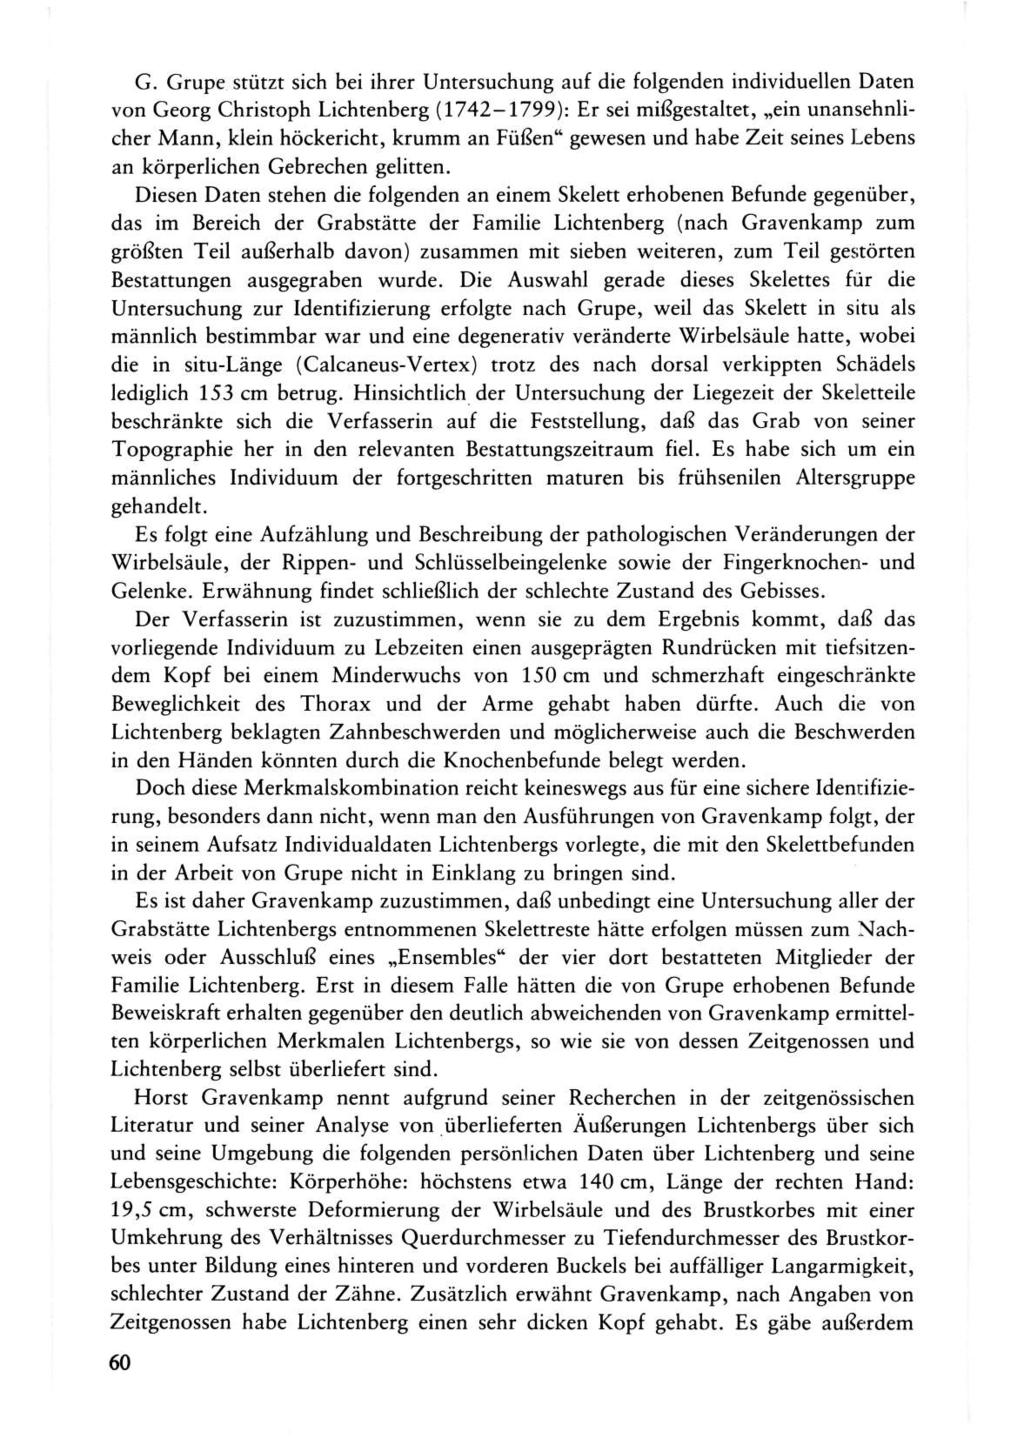 G. Grupe stützt sich bei ihrer Untersuchung auf die folgenden individuellen Daten von Georg Christoph Lichtenberg (1742-1799): Er sei mißgestaltet, ein unansehnlicher Mann, klein höckericht, krumm an